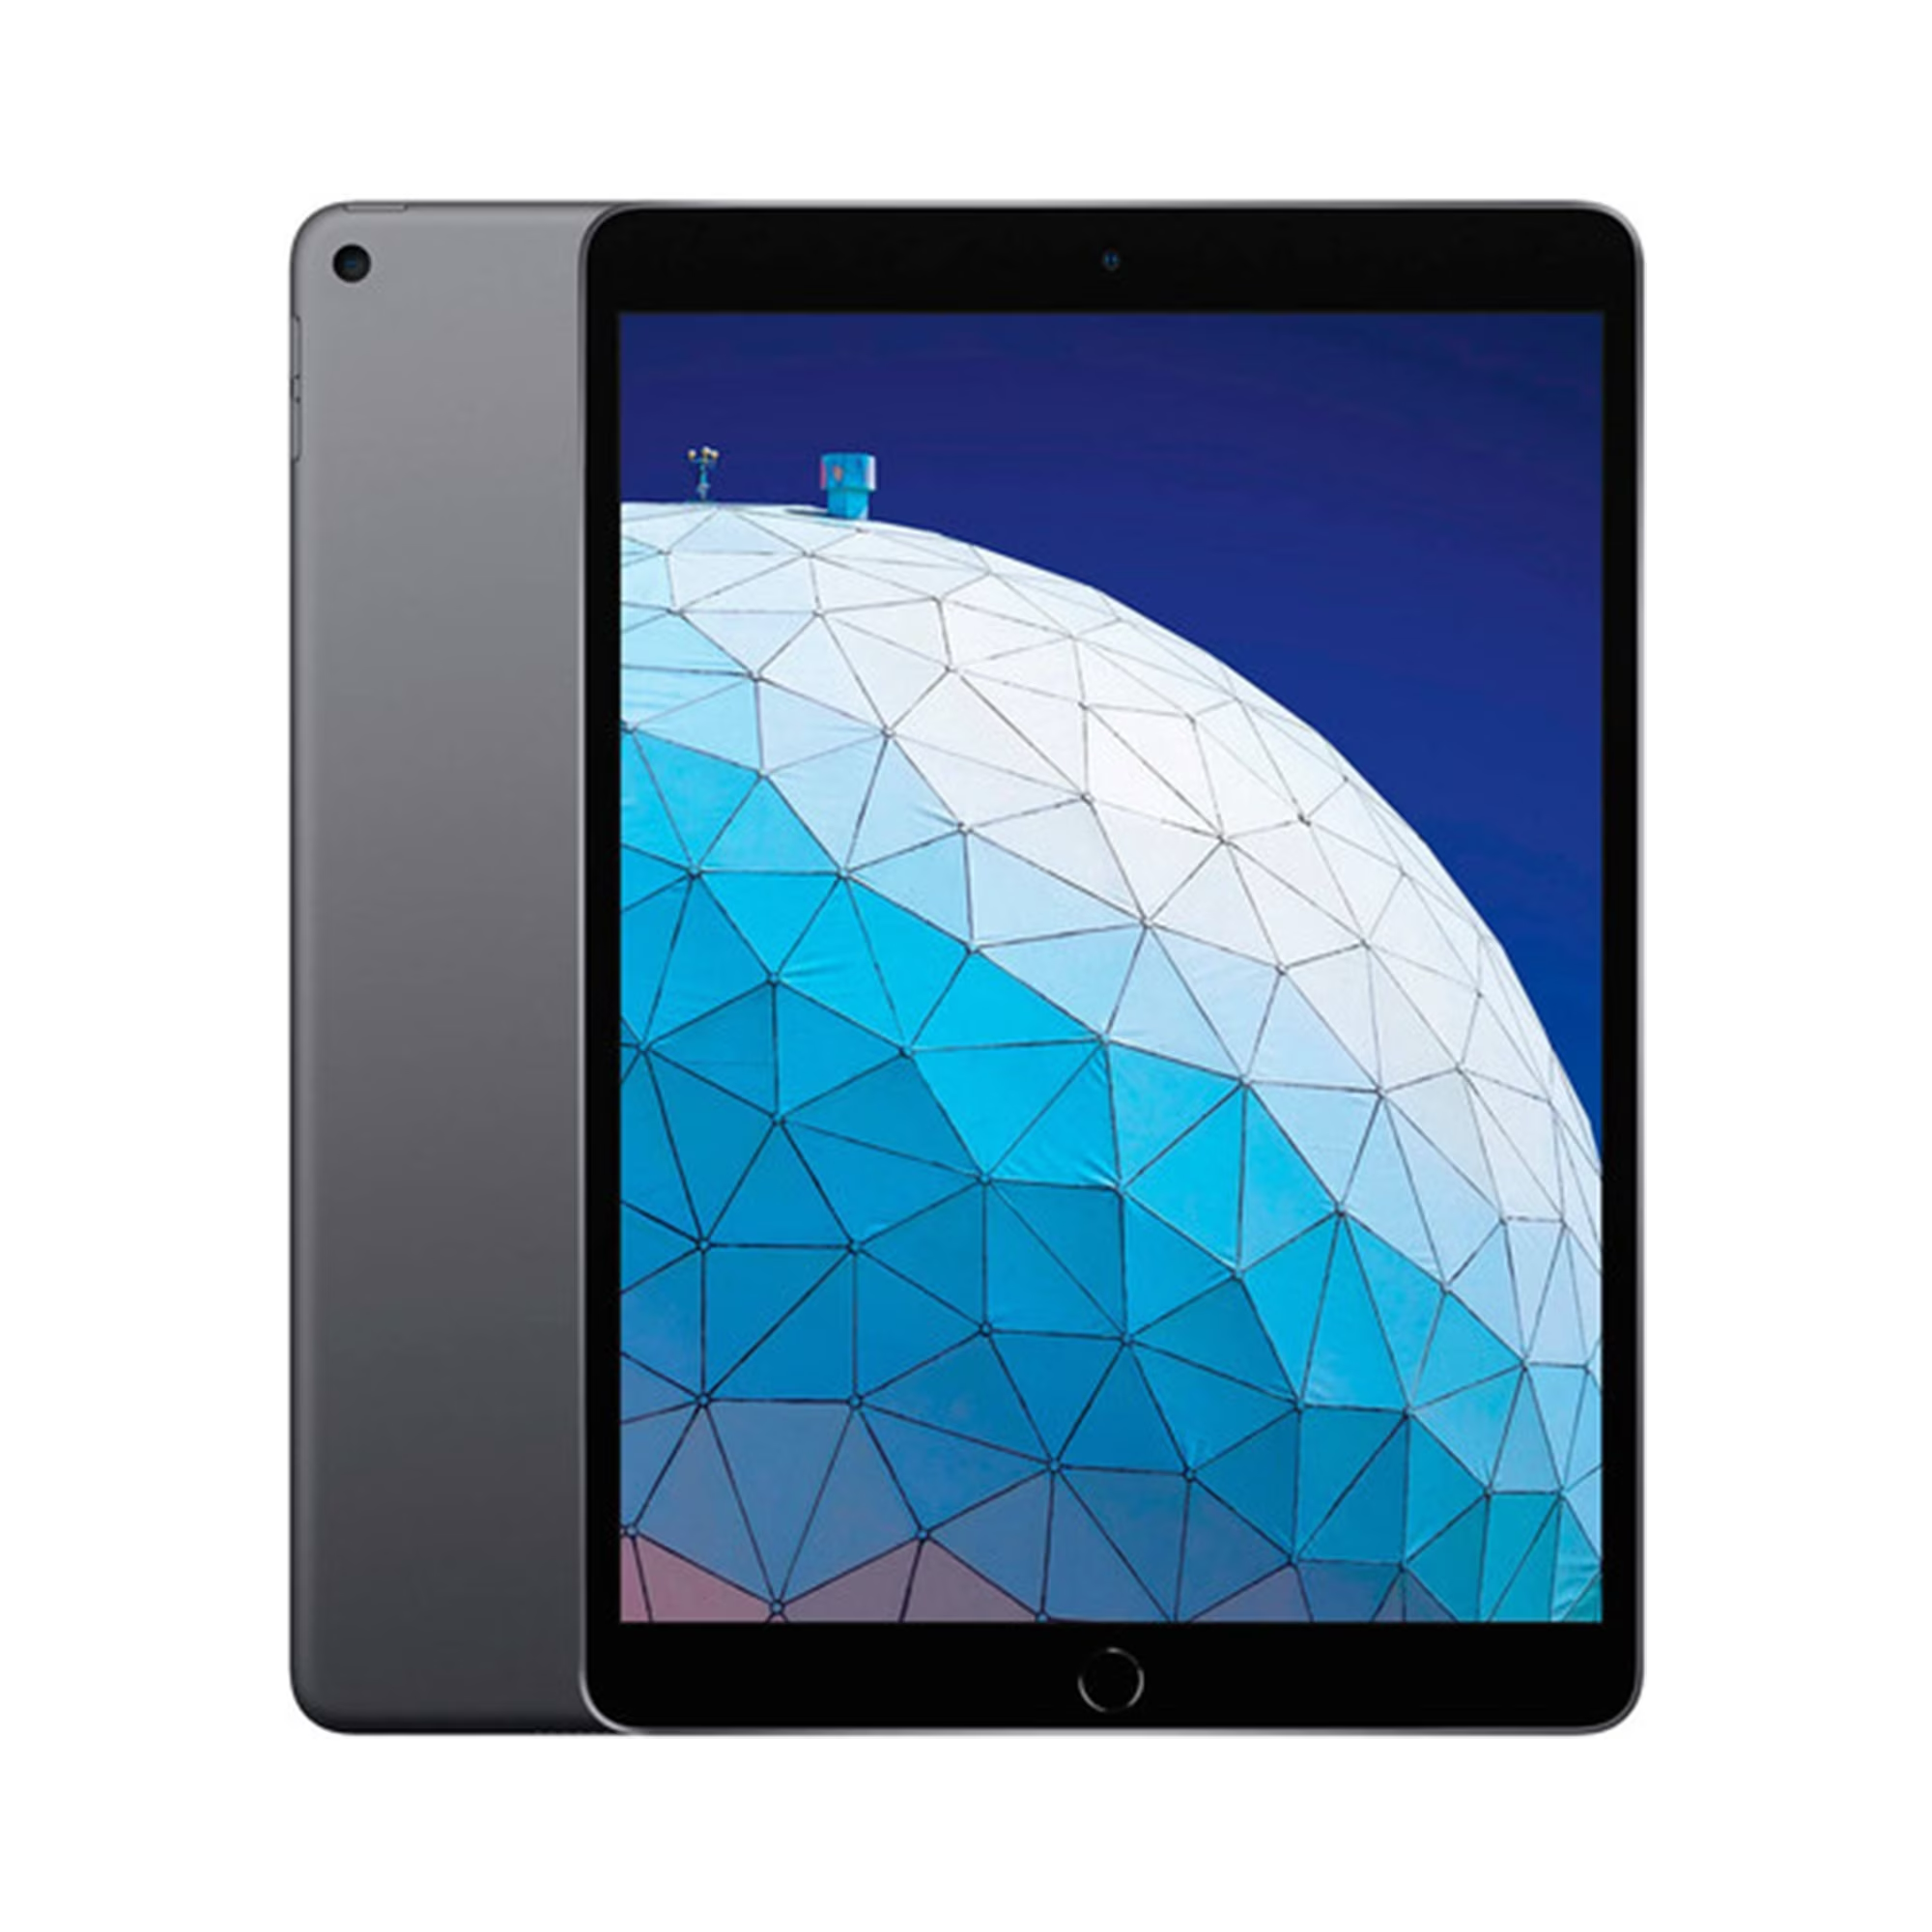 2016 iPad Pro 9.7" (32gb + Wifi)